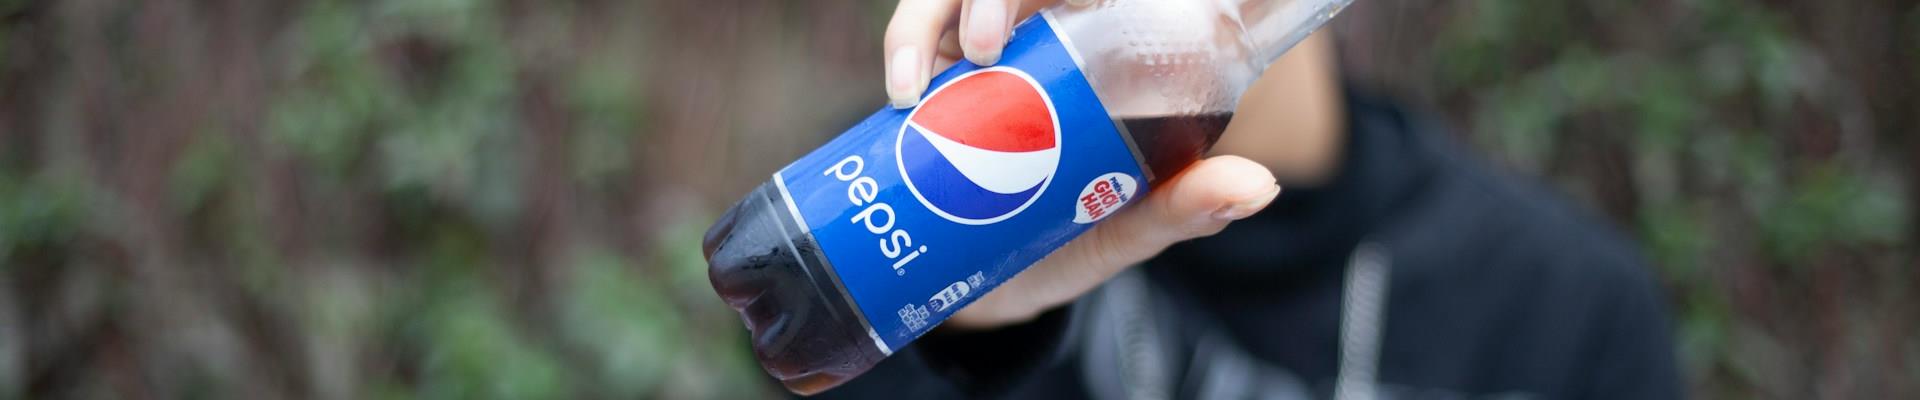 Pepsi Wild Cherry cria várias ativações em Las Vegas para ganhar visibilidade com o Super Bowl